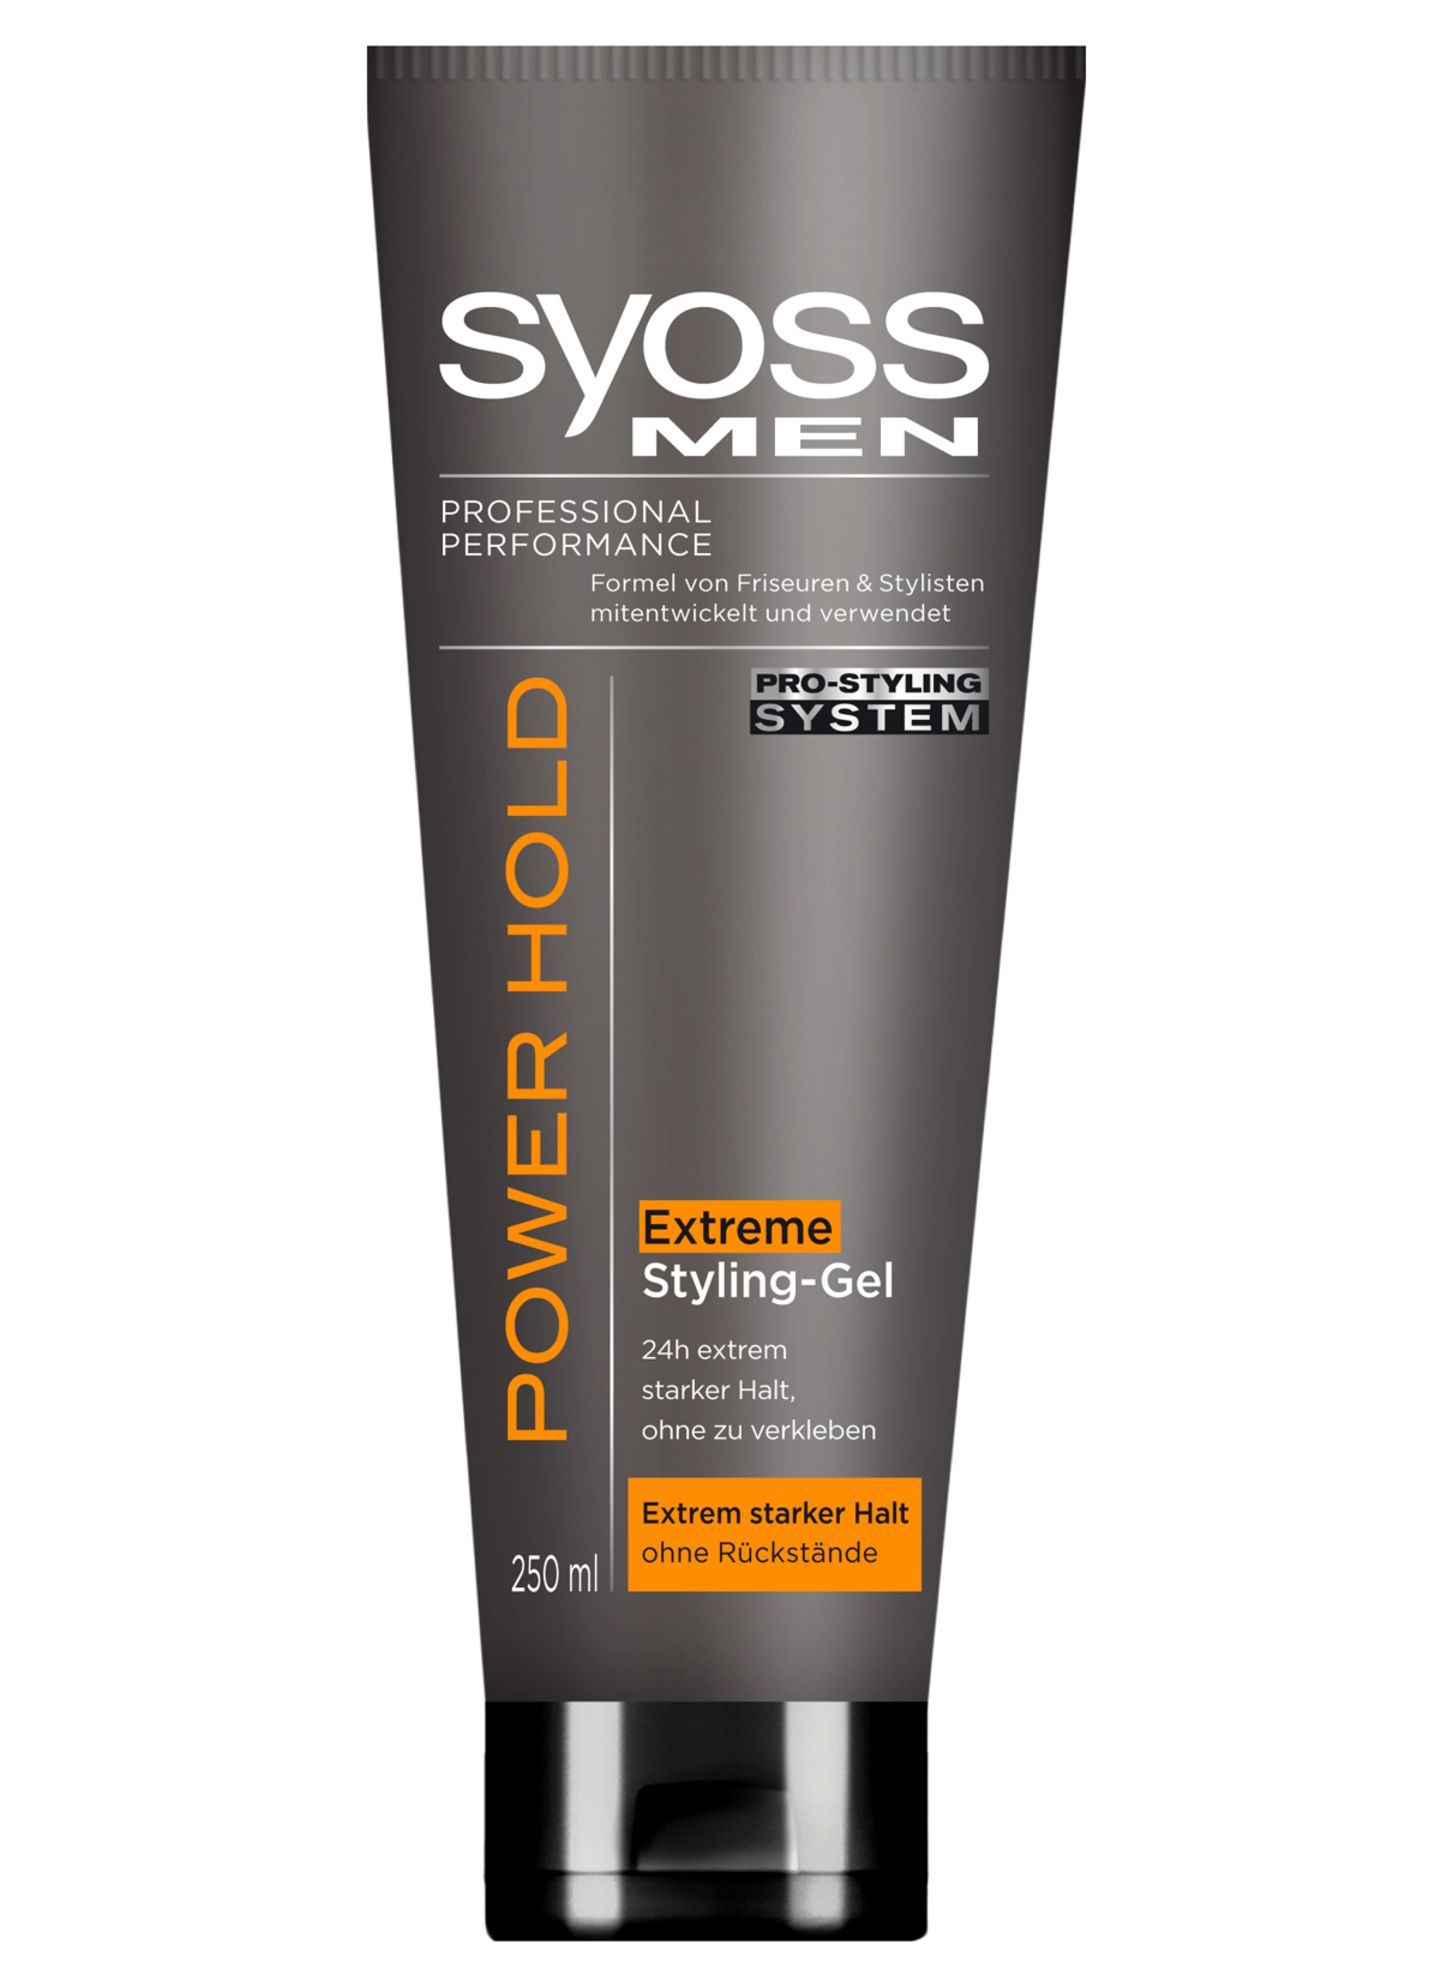 Das "Power Hold Extreme Styling-Gel" fixiert die Frisur bis zu 24 Stunden. Von Syoss Men, 250 ml, ca. 6 Euro